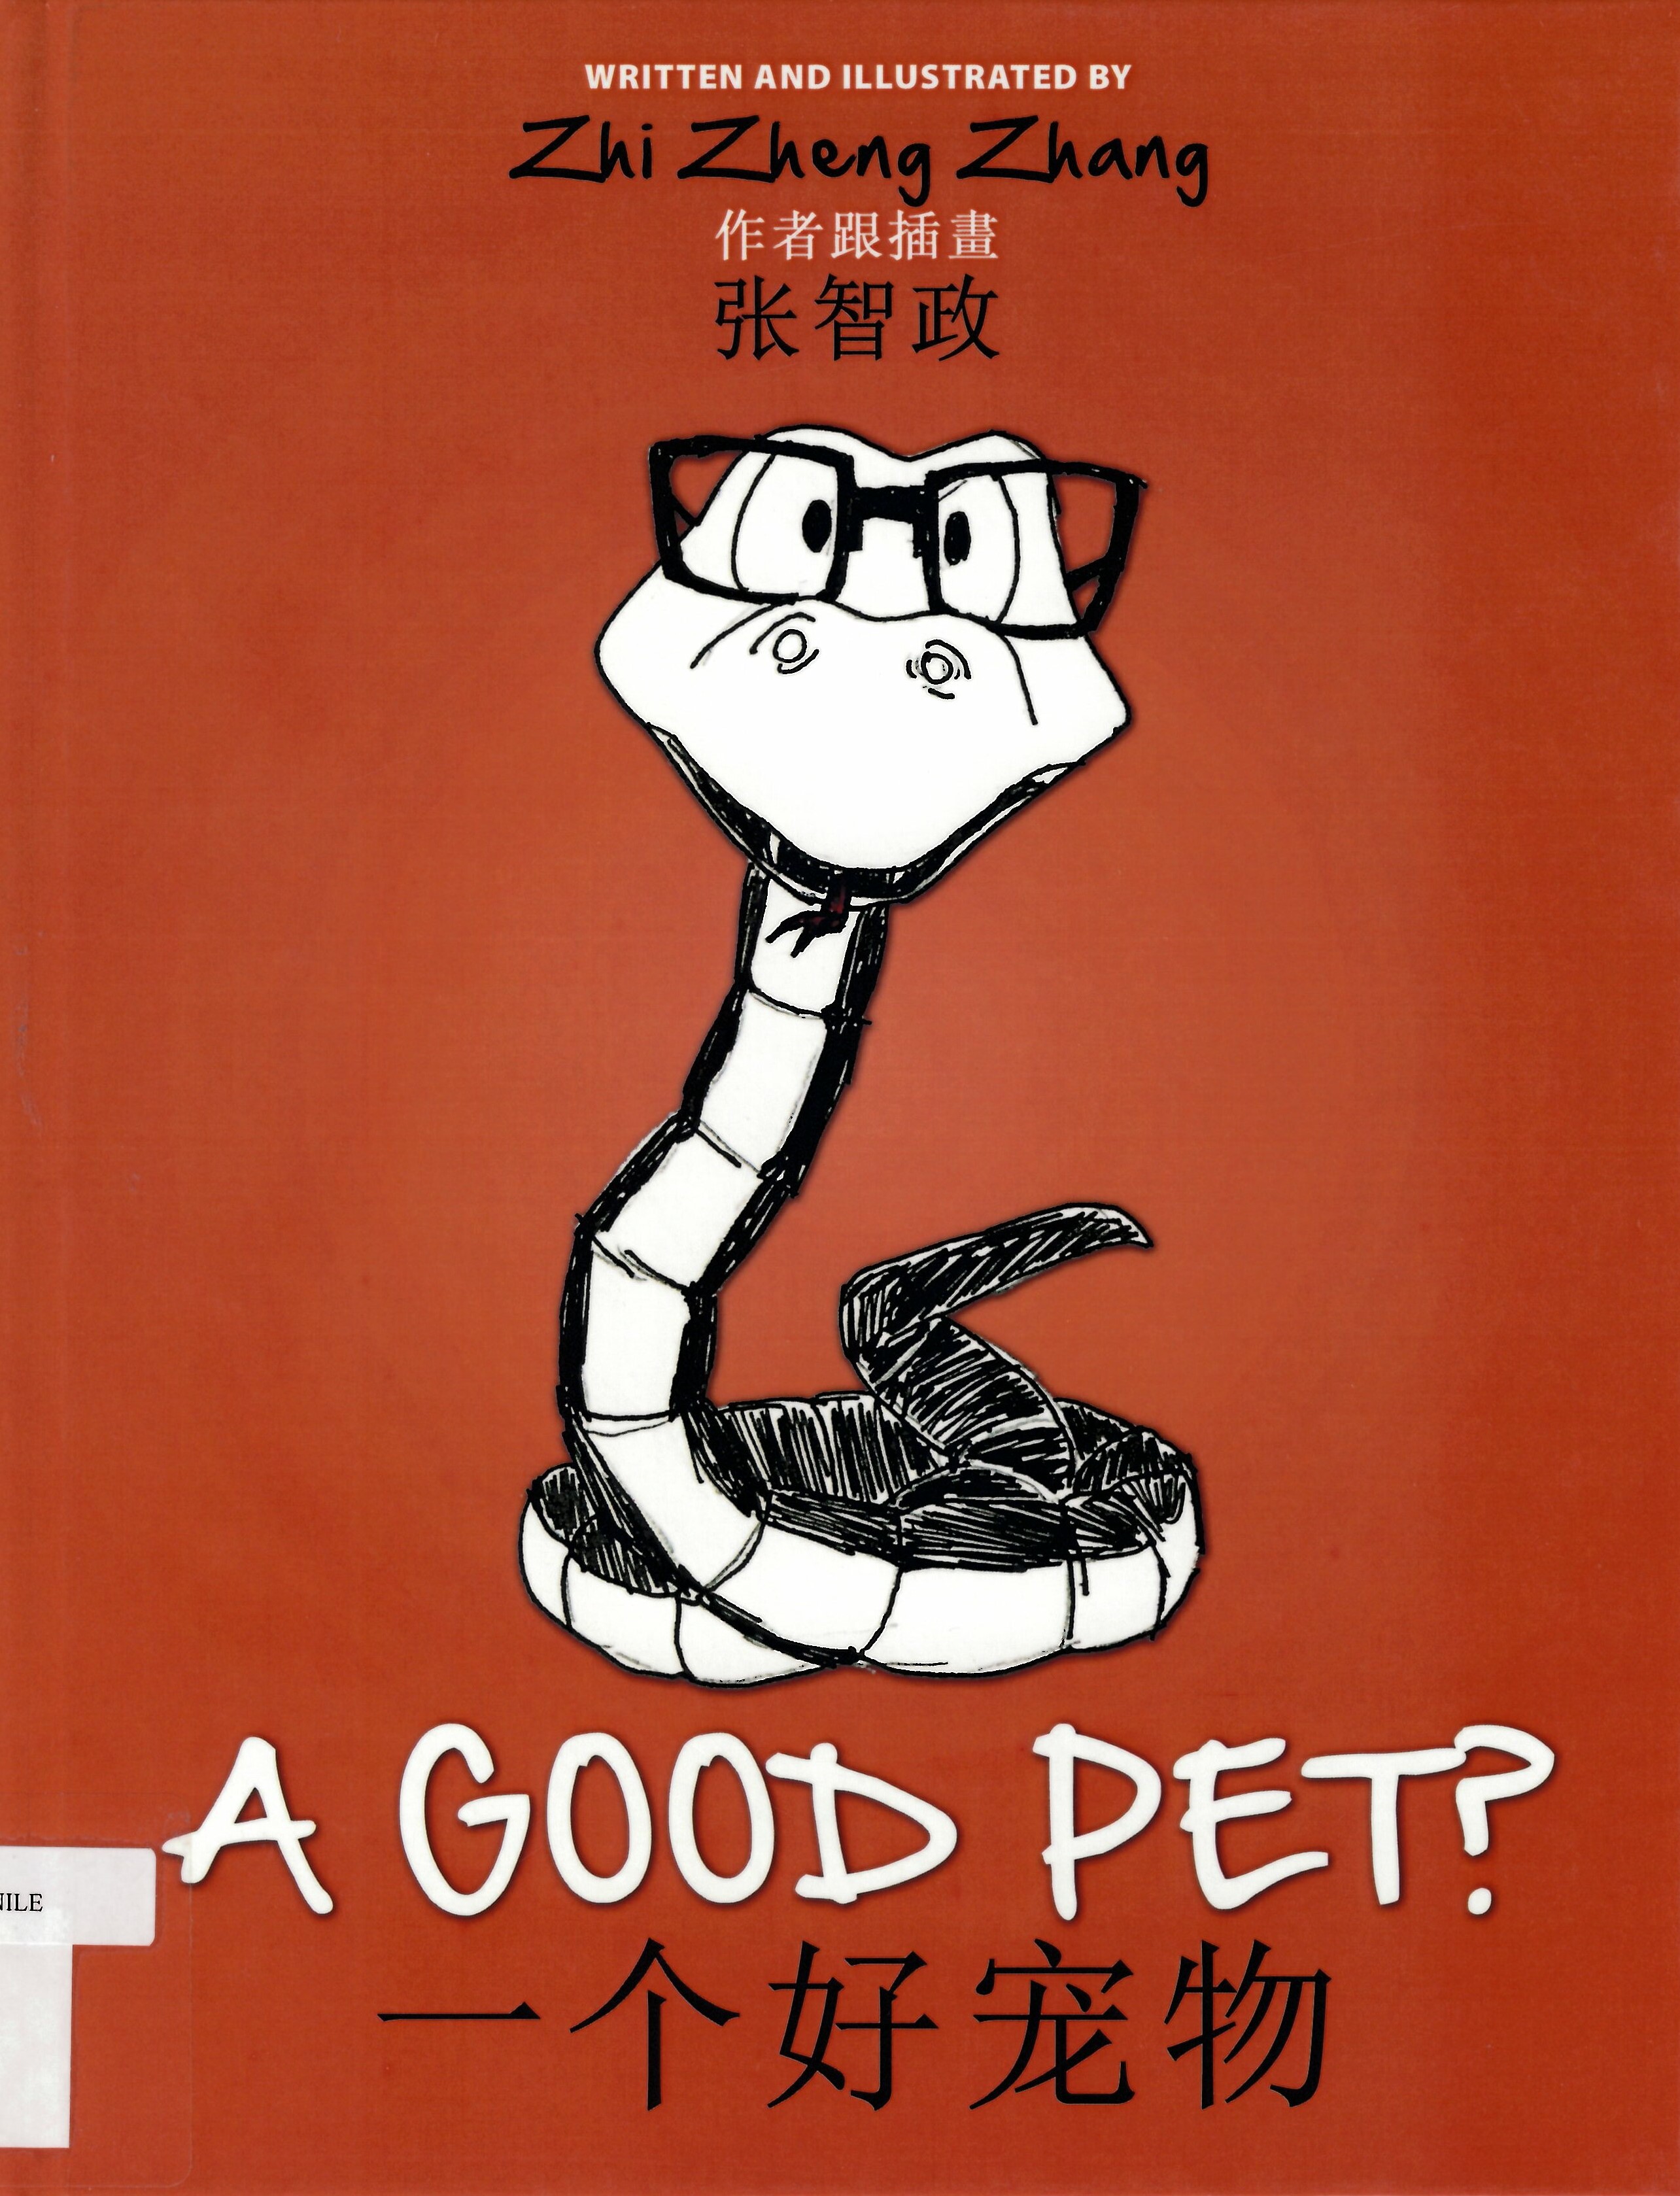 A good pet?